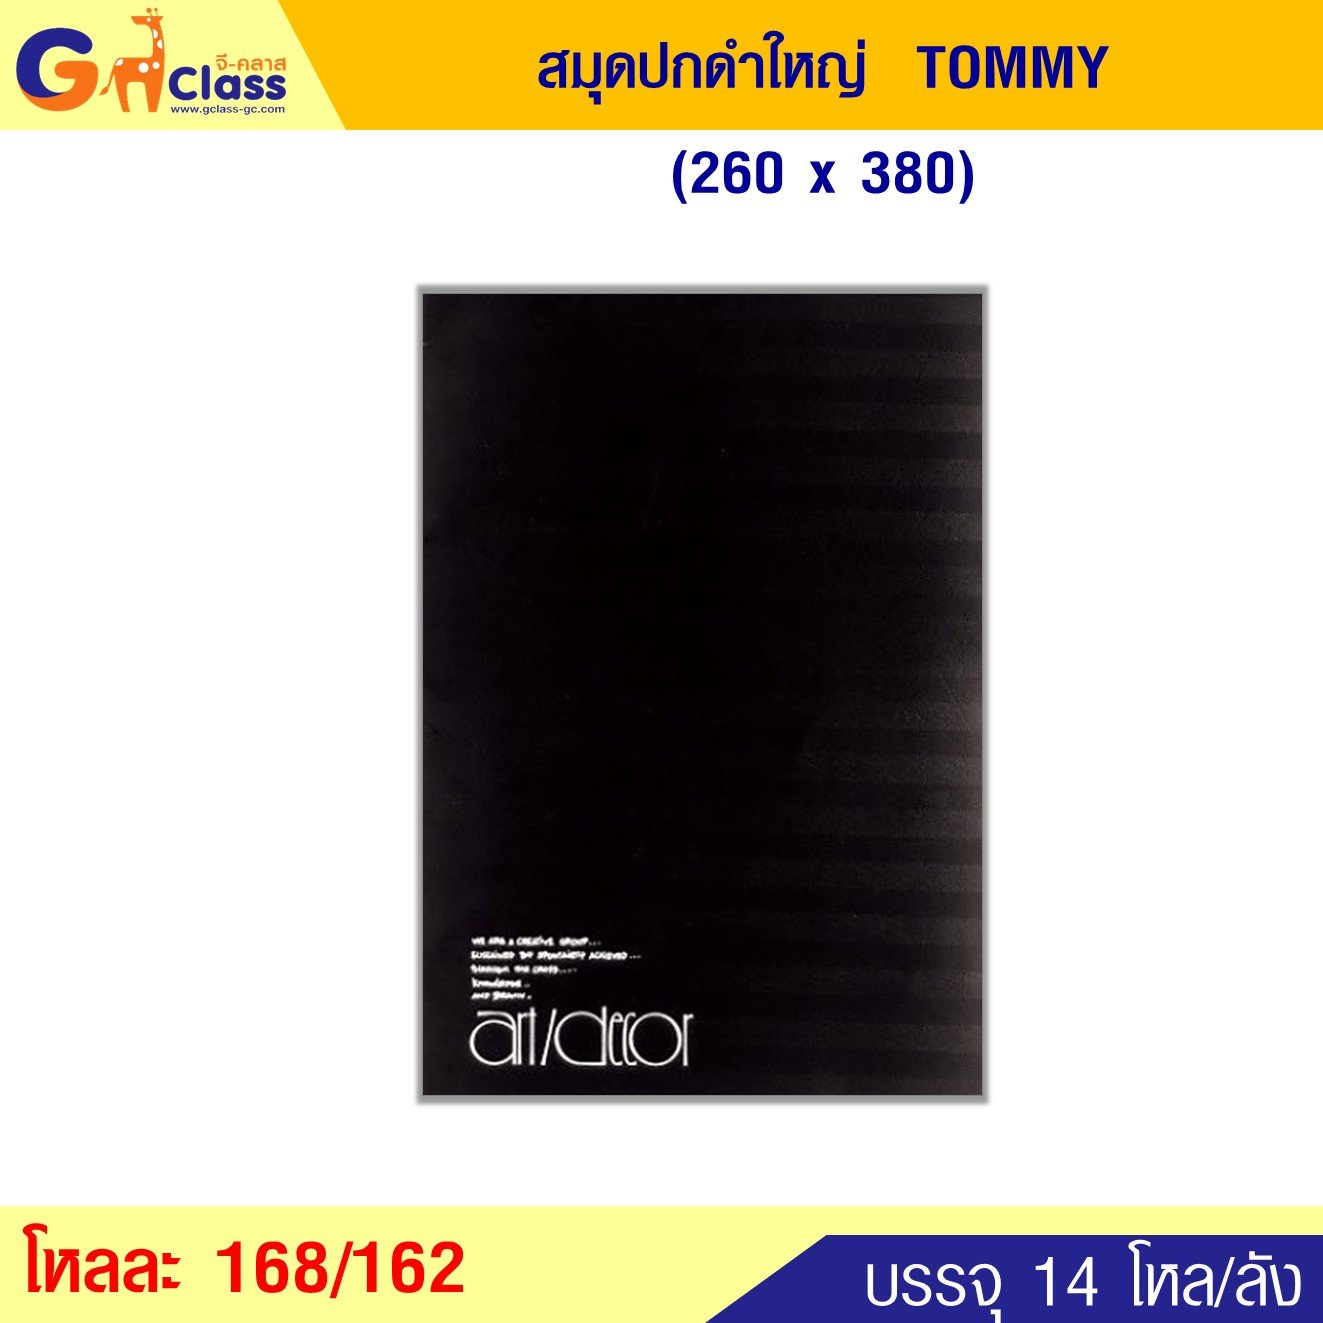 สมุดปกดำใหญ่ TOMMY (260x380)